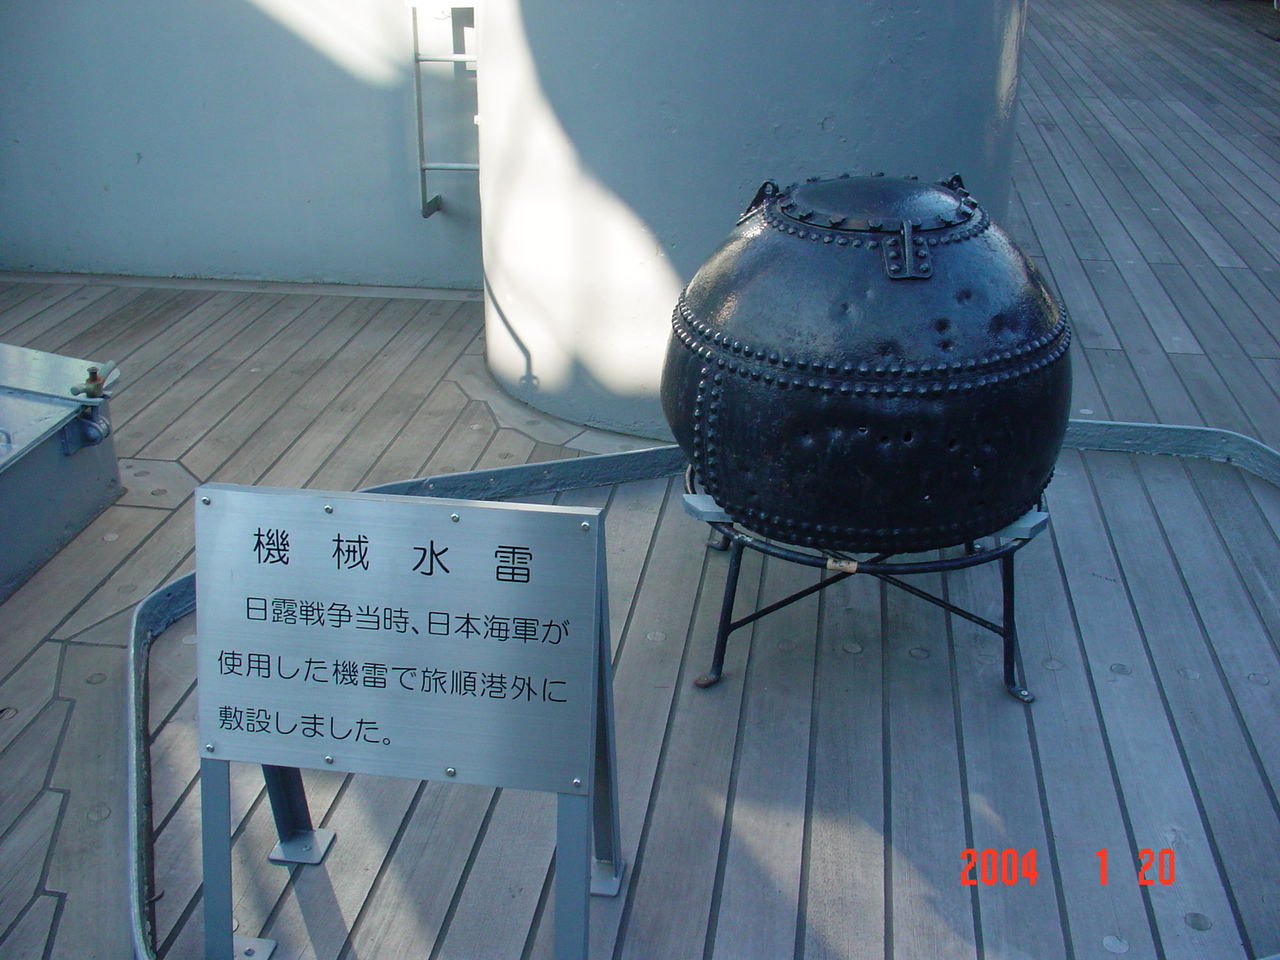 日本海軍用以封鎖旅順港的機械水雷